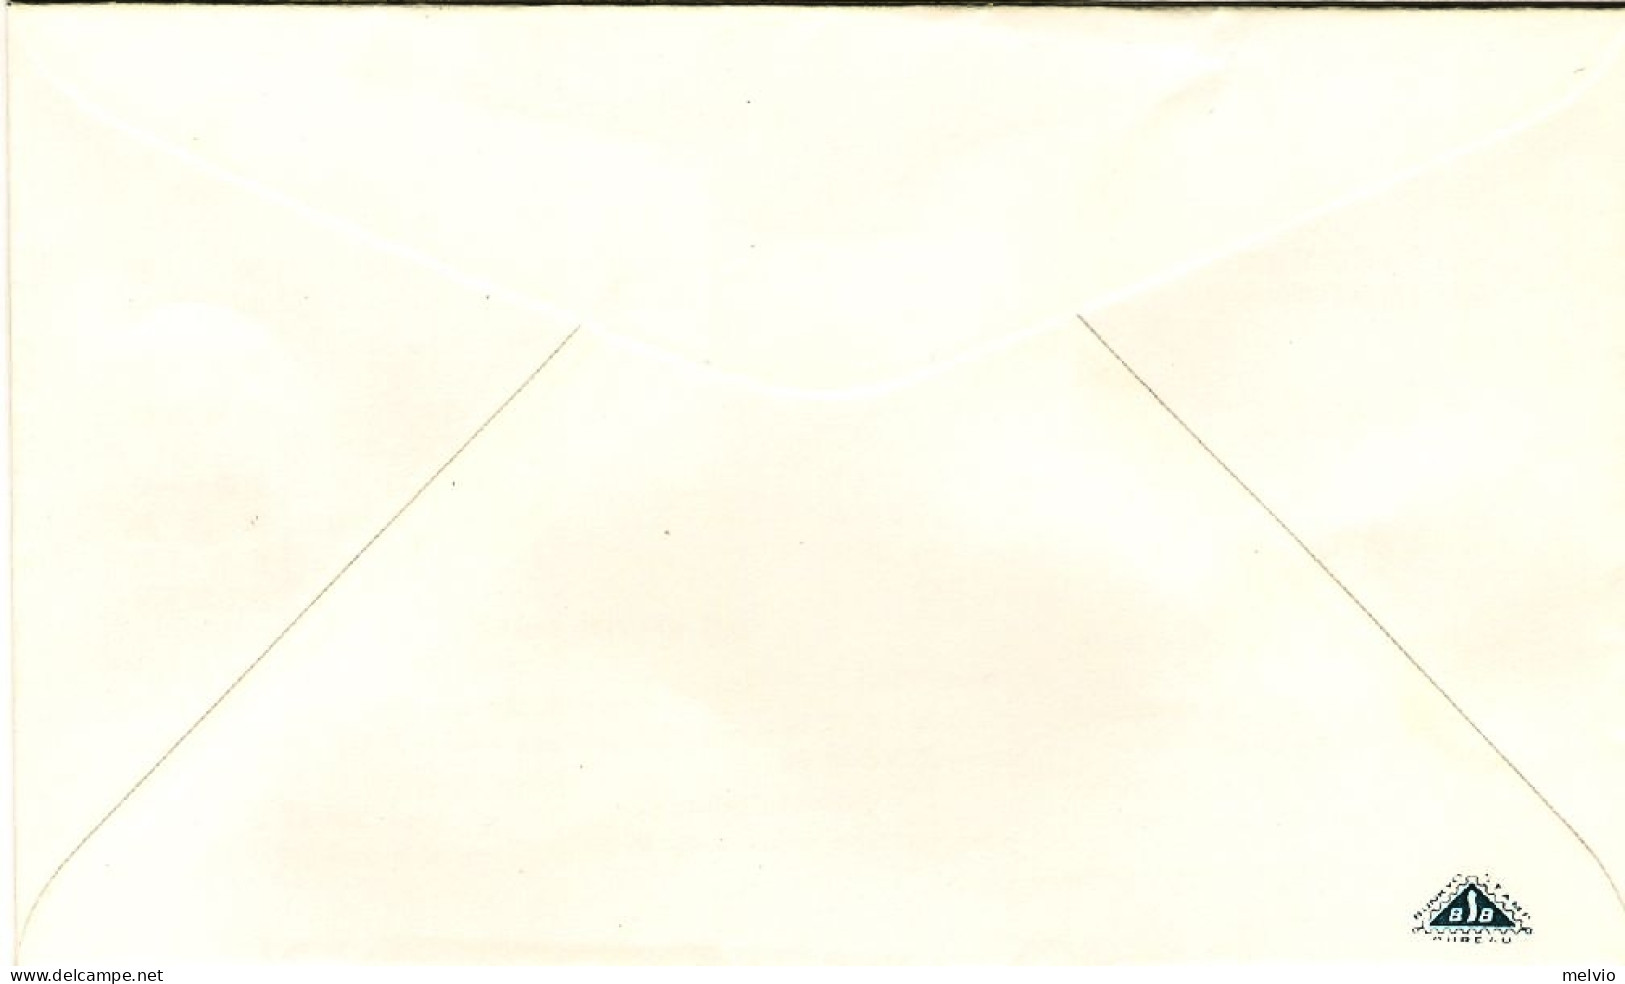 1980-Giappone Japan S.2v."Giornata Della Lettera Scritta" Su Fdc Con Foglietto I - FDC